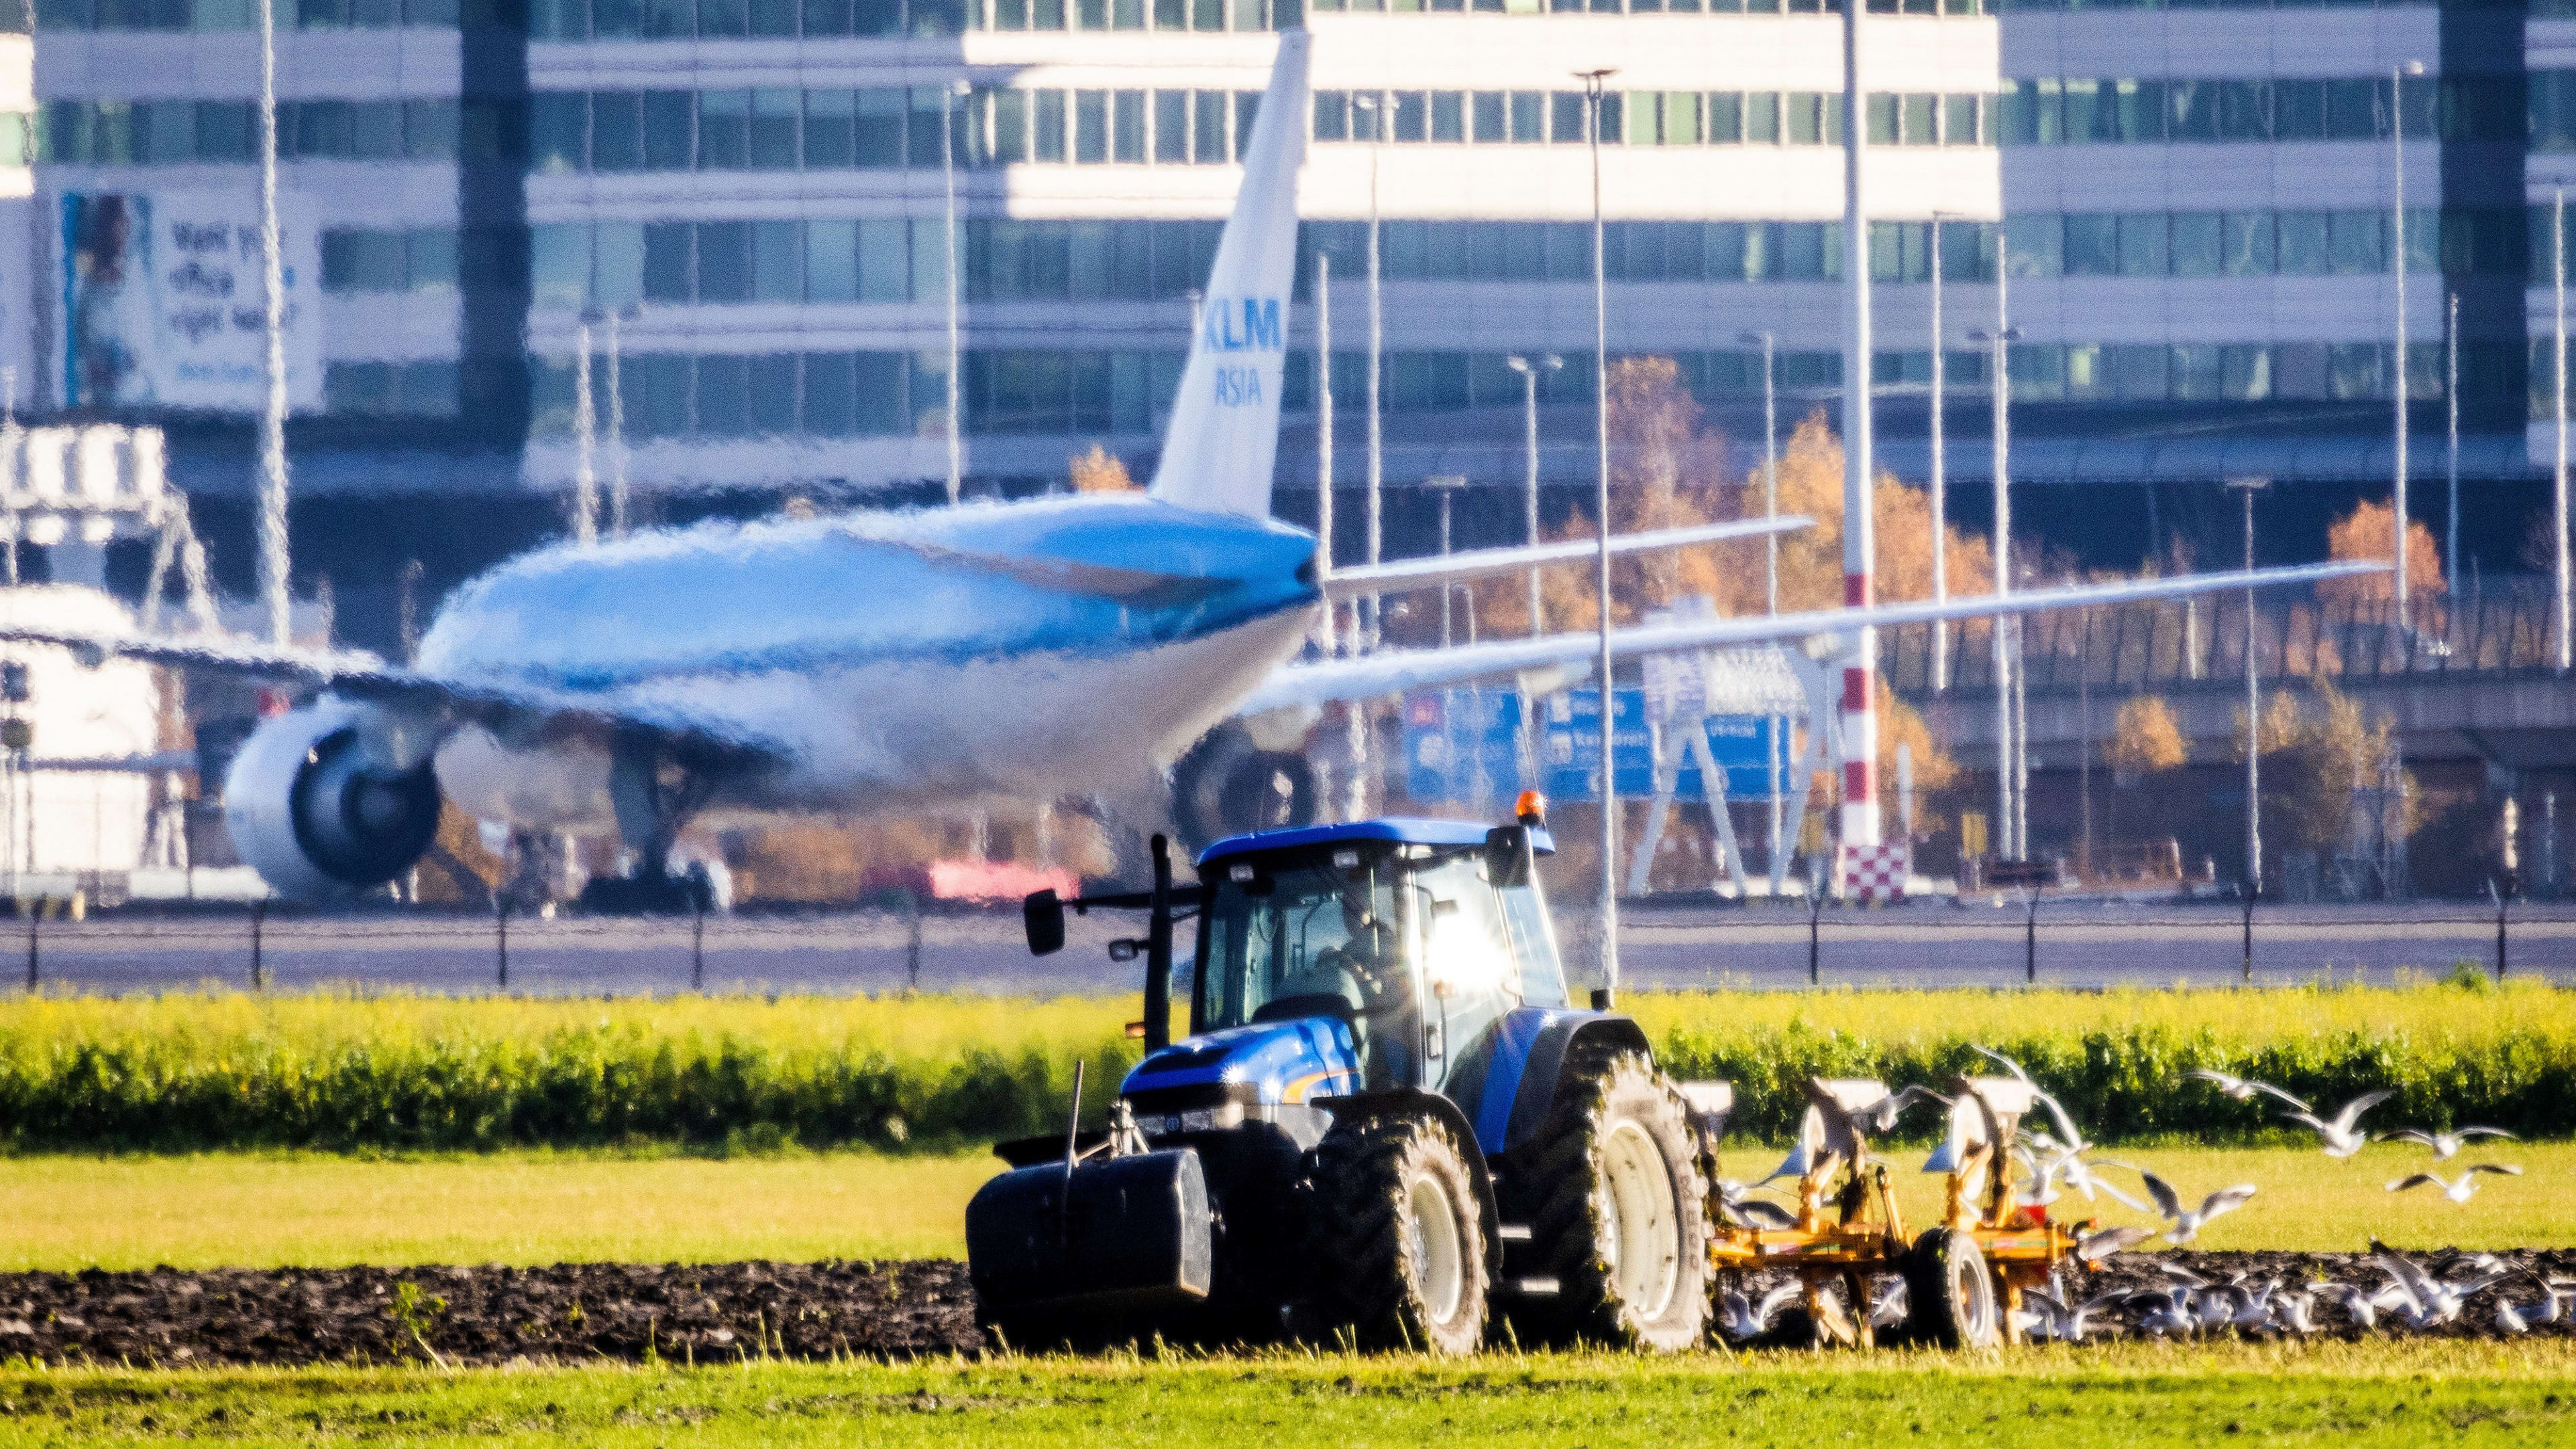 Links en rechts zijn het eens: Schiphol moet niet langer boeren uitkopen voor stikstofruimte